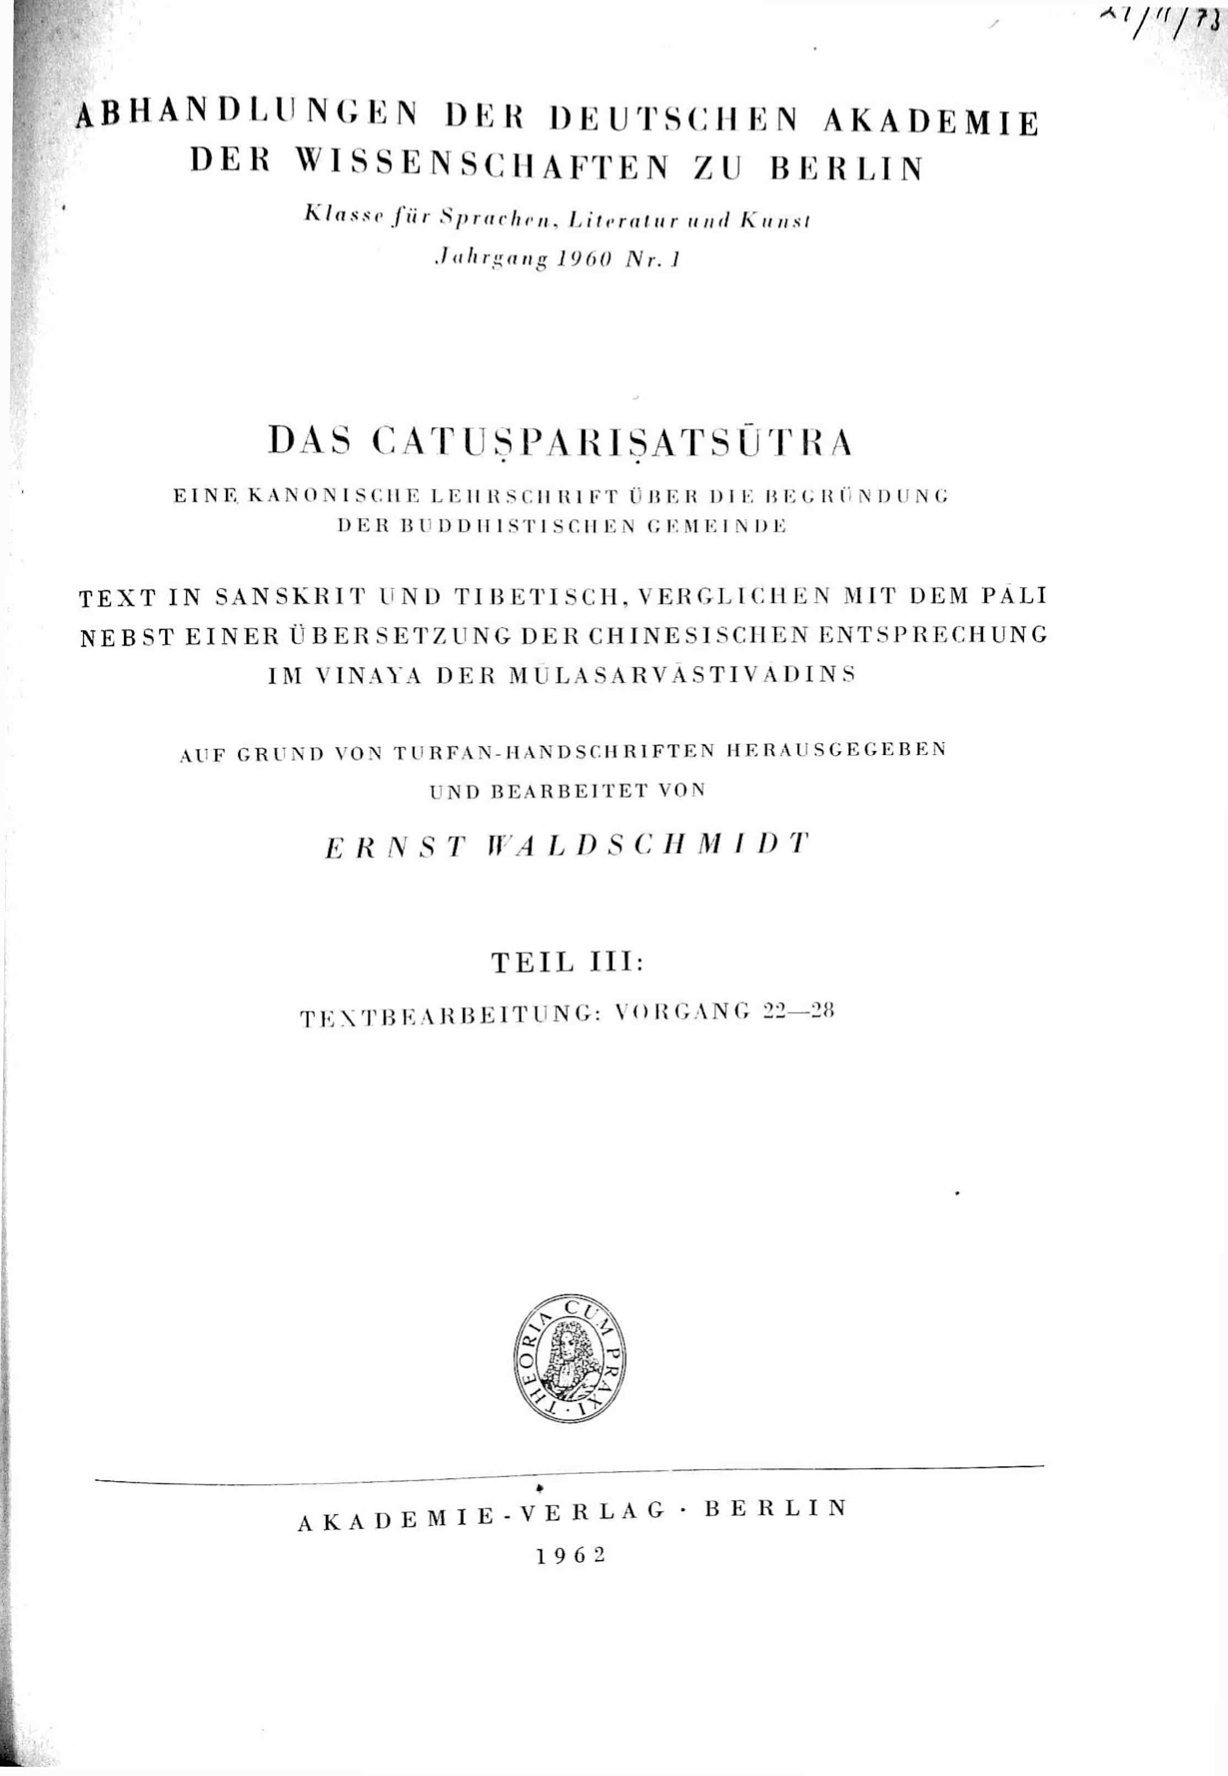 Das Catusparisatsutra Vol. 3-front.jpg